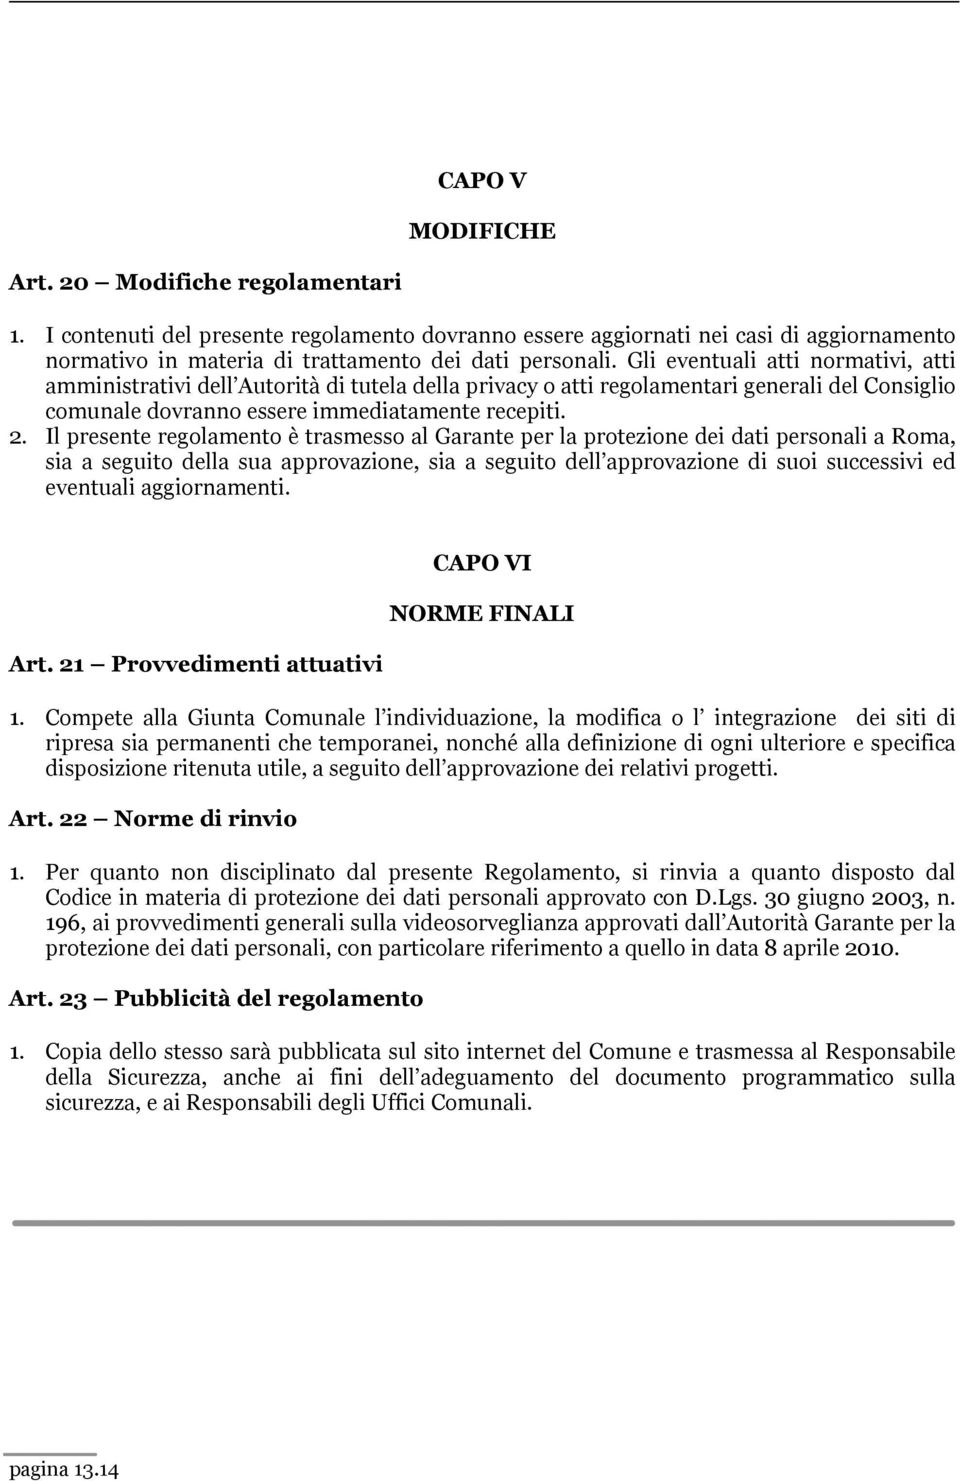 Il presente regolamento è trasmesso al Garante per la protezione dei dati personali a Roma, sia a seguito della sua approvazione, sia a seguito dell approvazione di suoi successivi ed eventuali